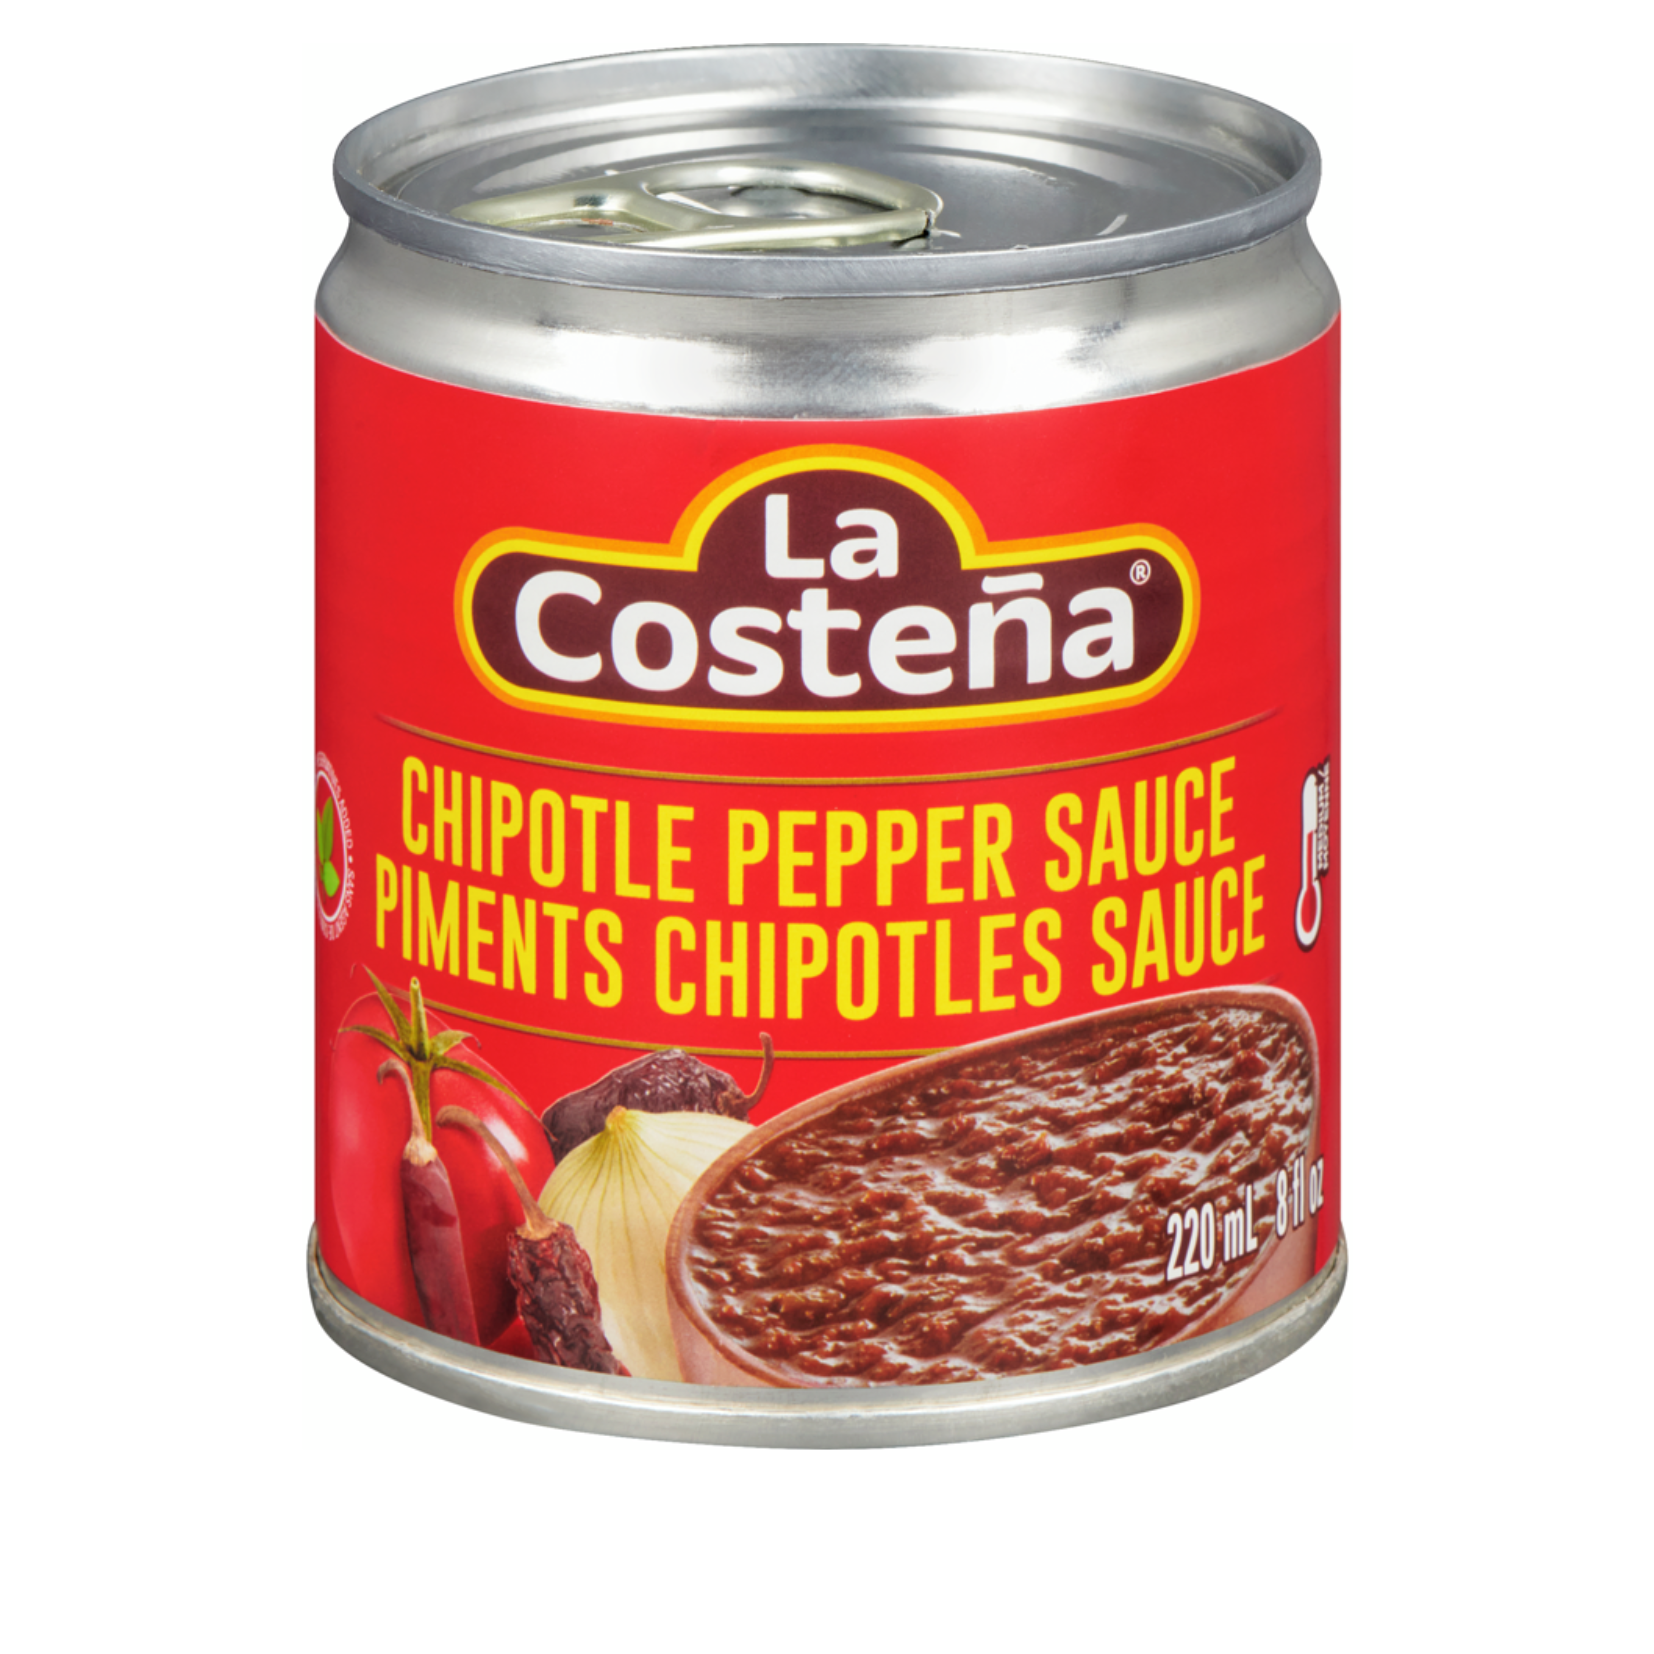 La Costena Chipotle Pepper Sauce 220ml